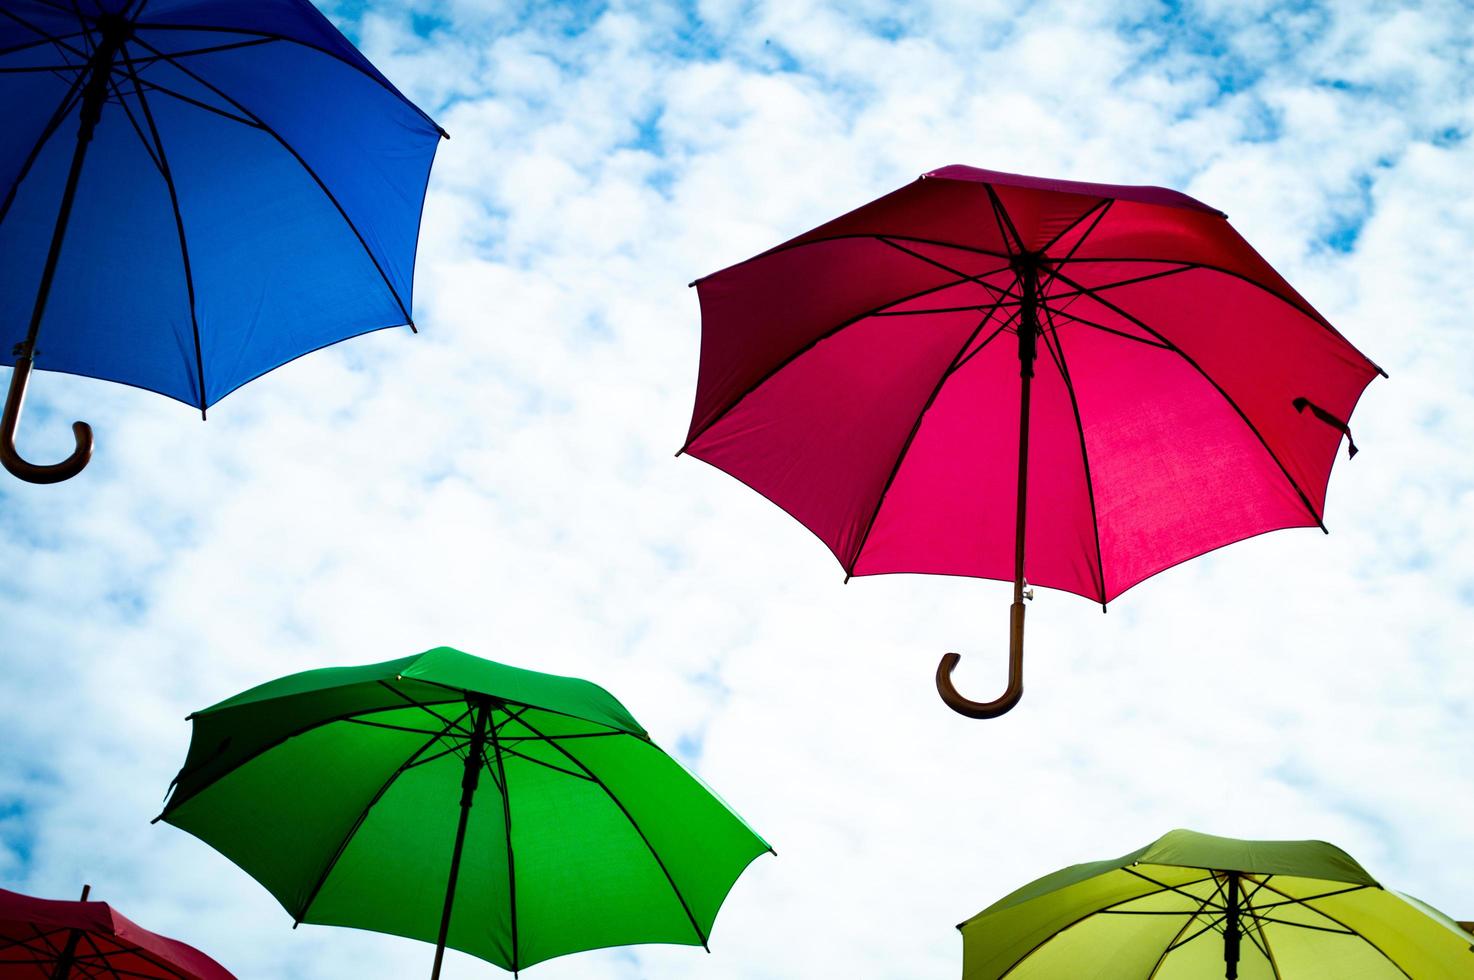 parapluies multicolores avec ciel bleu photo